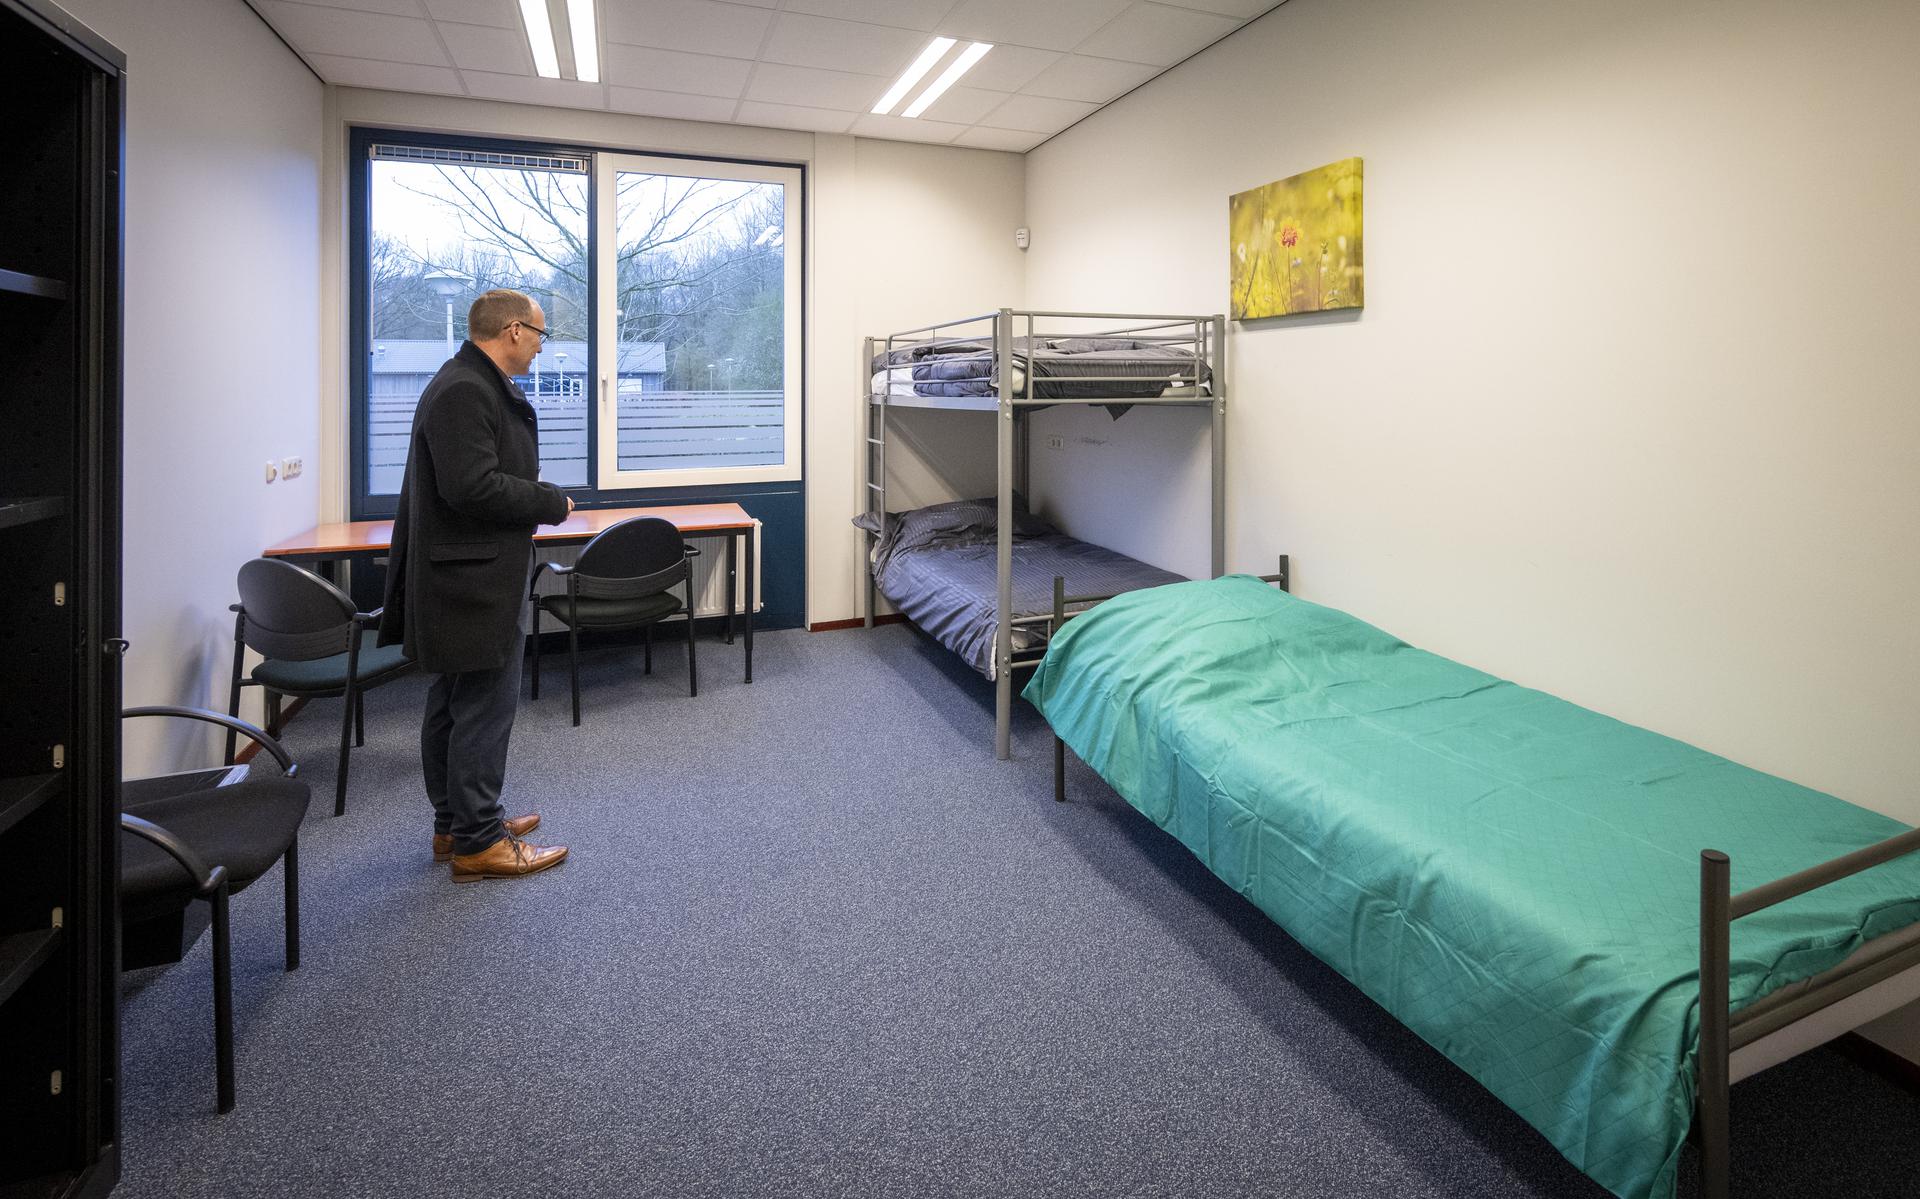 Anno Wietze Hiemstra, burgemeester Aa en Hunze, bekijkt de nieuwe kamers voor vluchtelingen in zijn gemeente in april 2022.